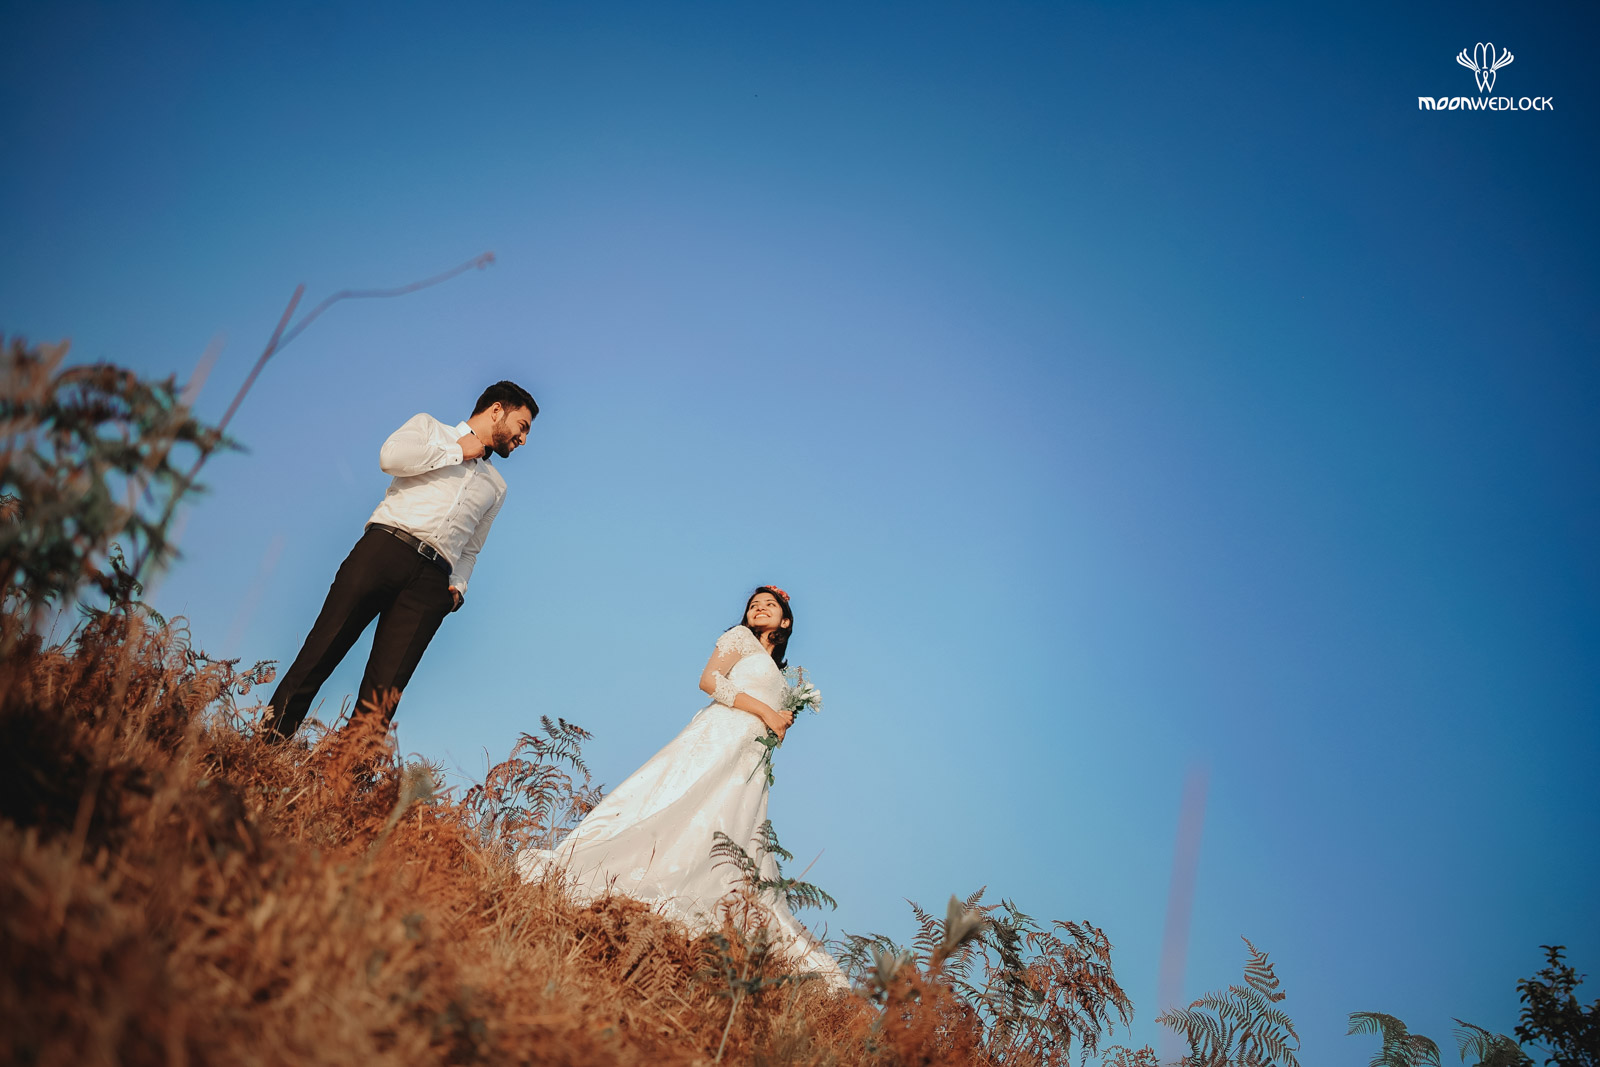 wedding-photographers-in-bangalore-moonwedlock (3)